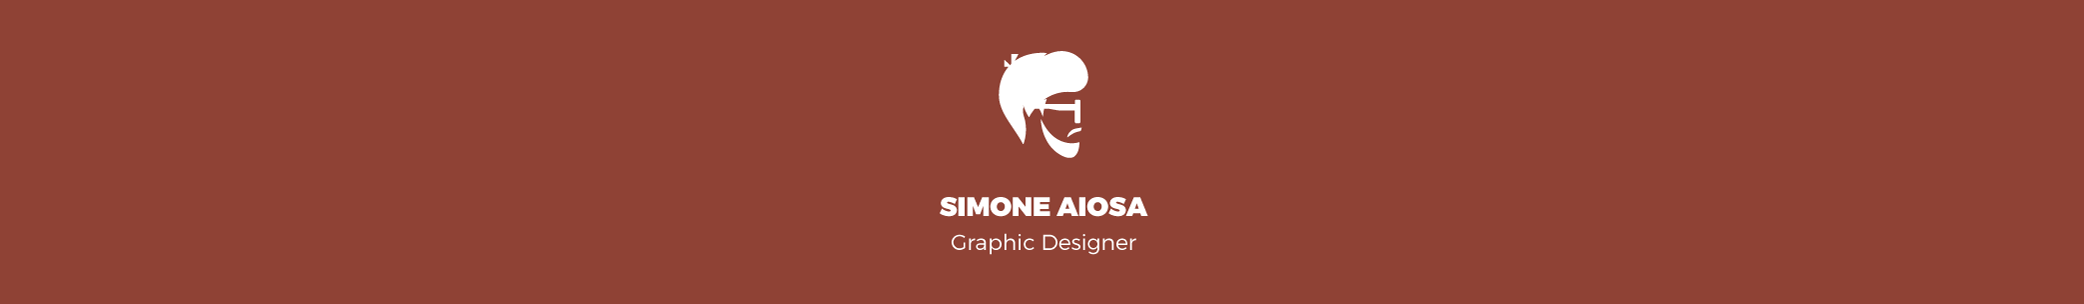 Simone Aiosa's profile banner